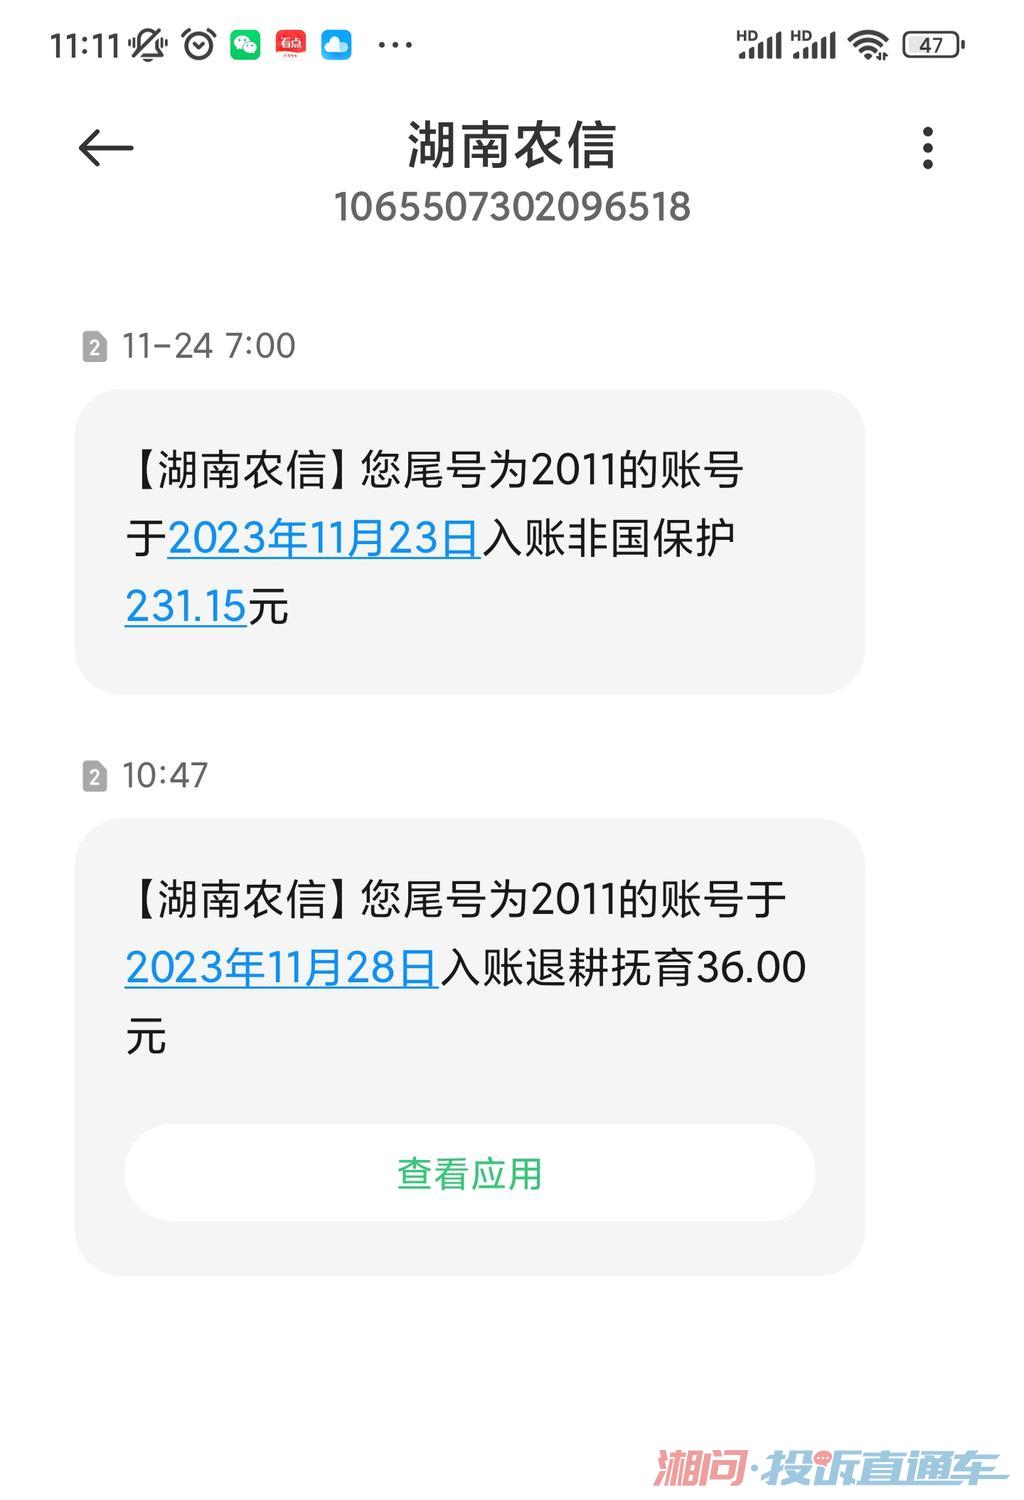 手机一直会收到湖南农信发送的入账信息，是什